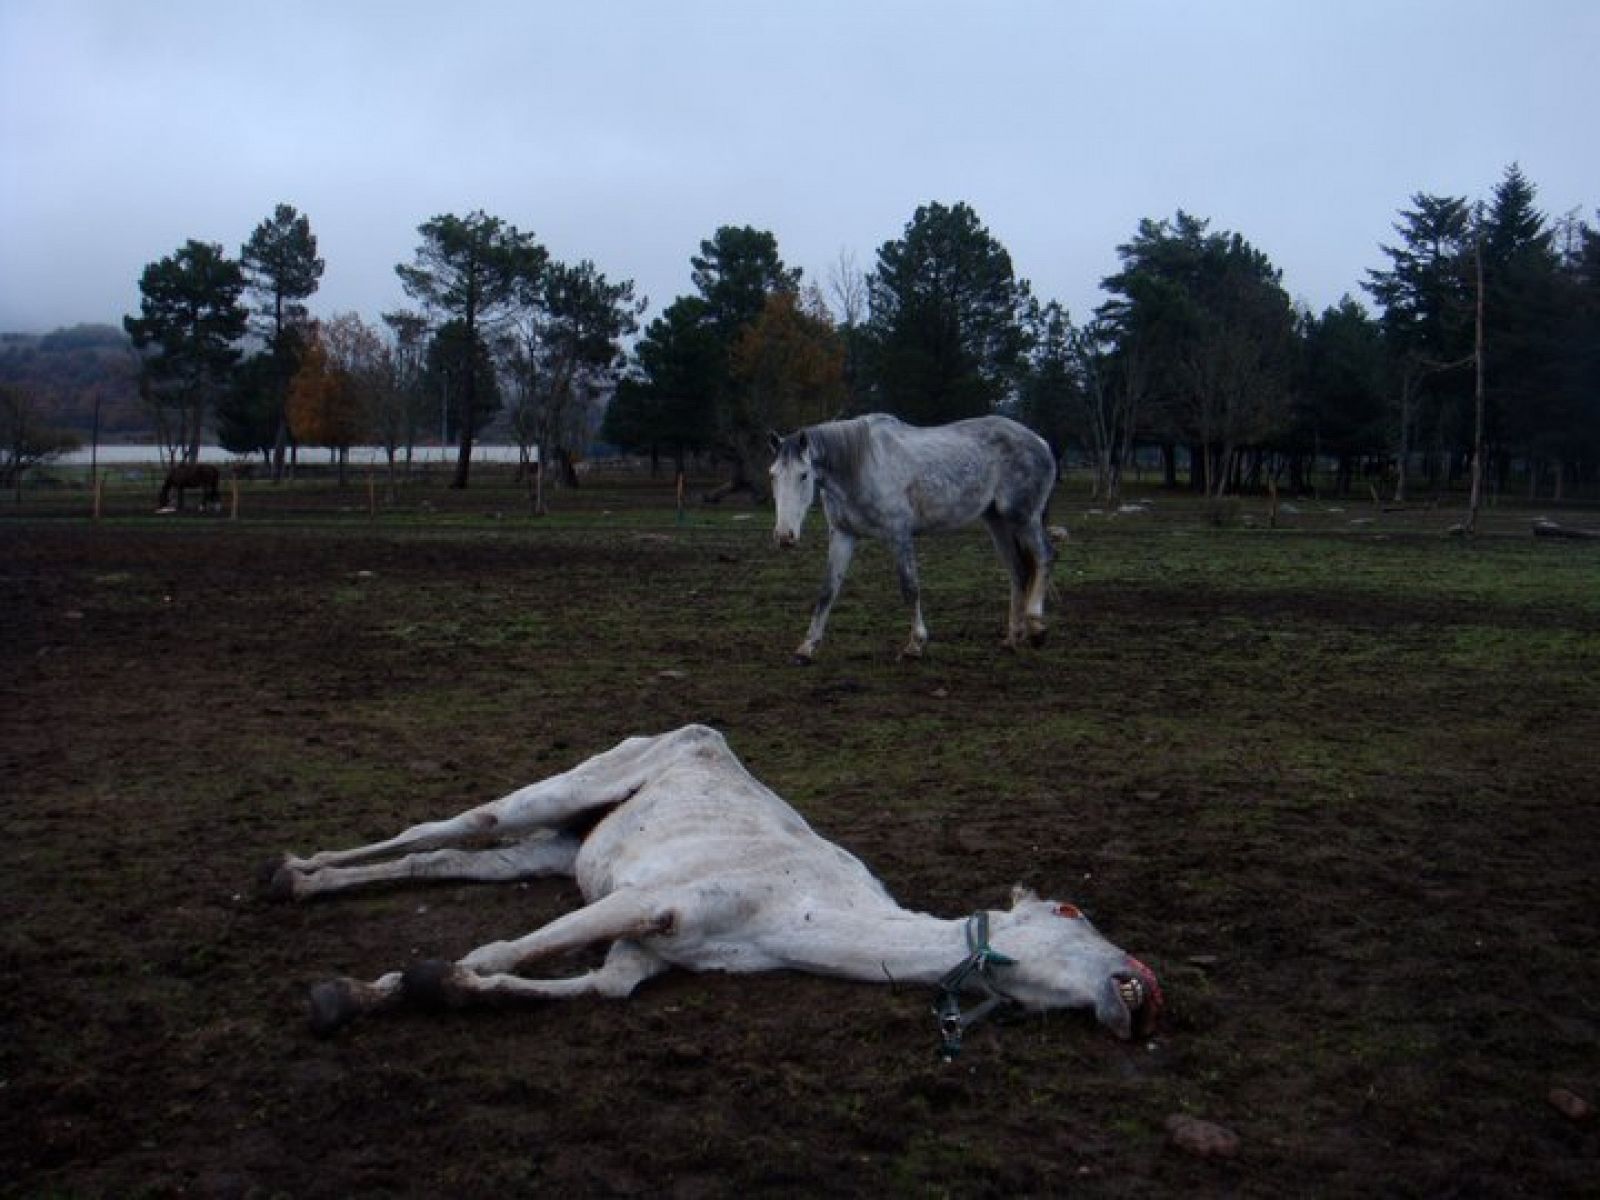 Un equino pasea por el picadero cerca del lugar donde ha fallecido uno de los ejemplares